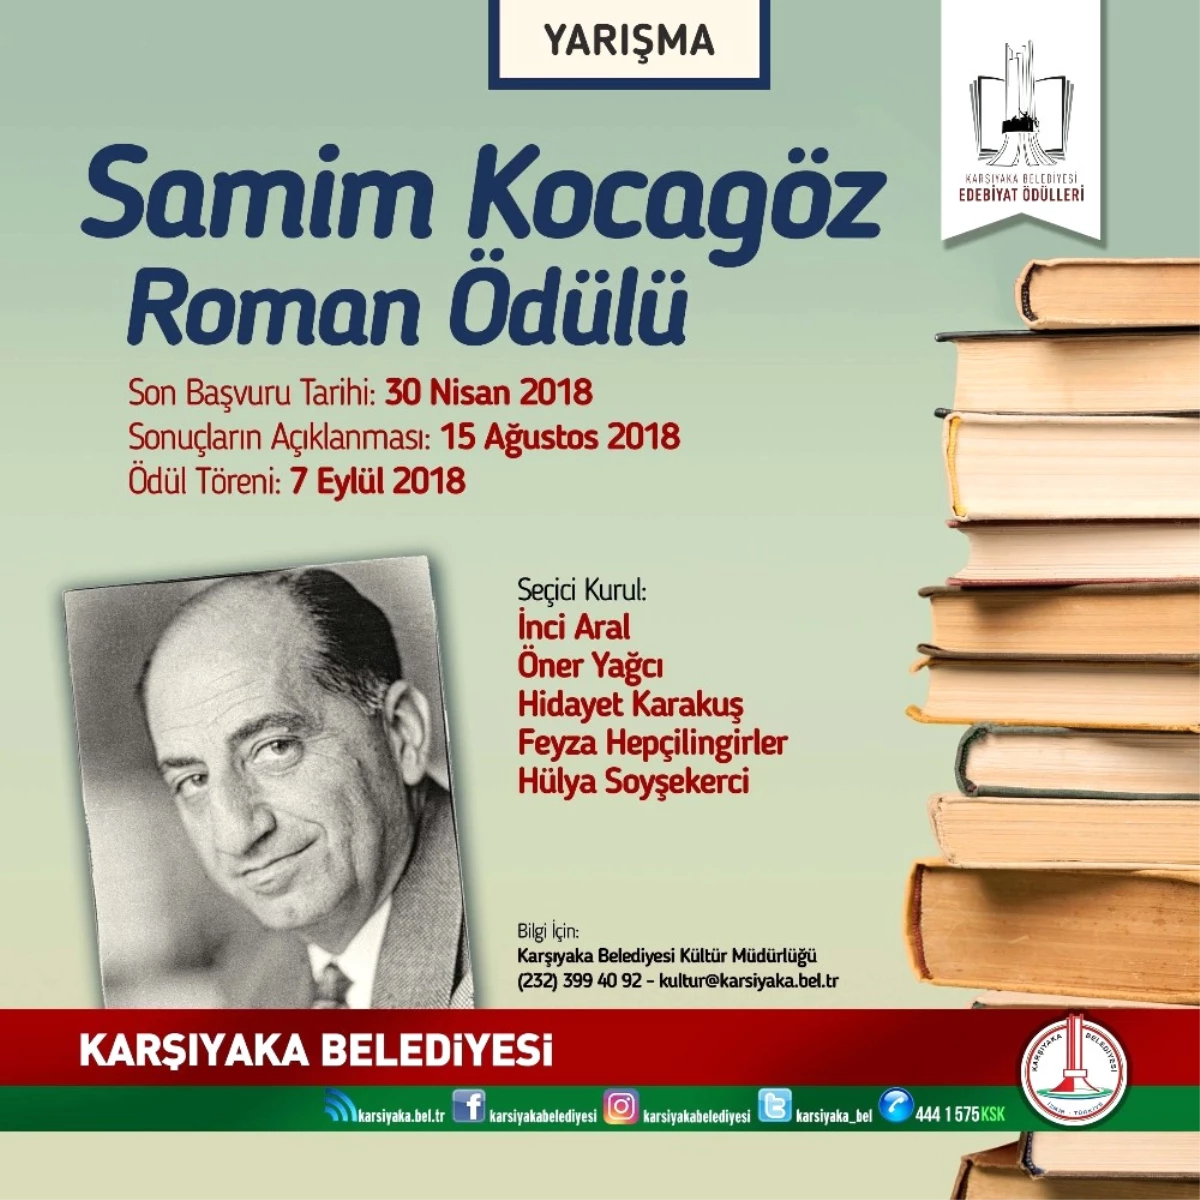 Karşıyaka Belediyesinden "Edebiyat Ödülleri"